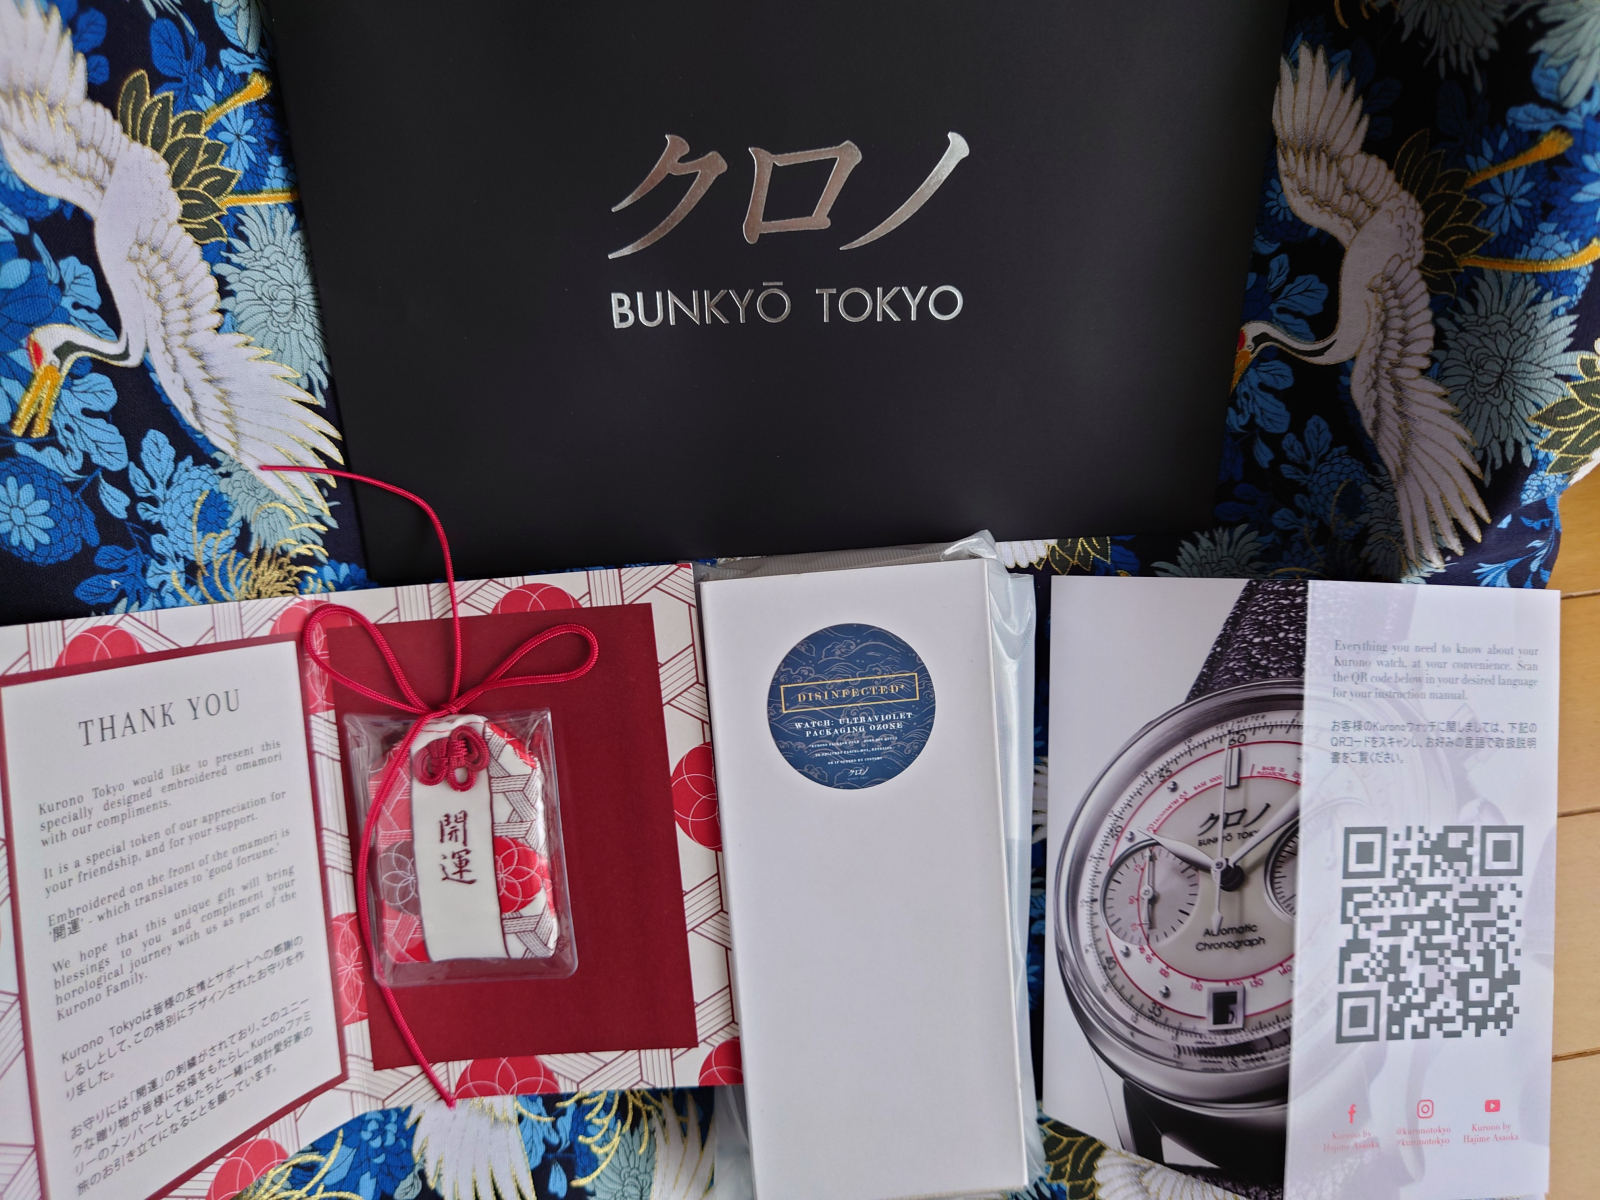 トケマー:【未開封】クロノトウキョウ クロノグラフ2 白 Kurono Tokyo Chronograph II Shiro 限定完売品